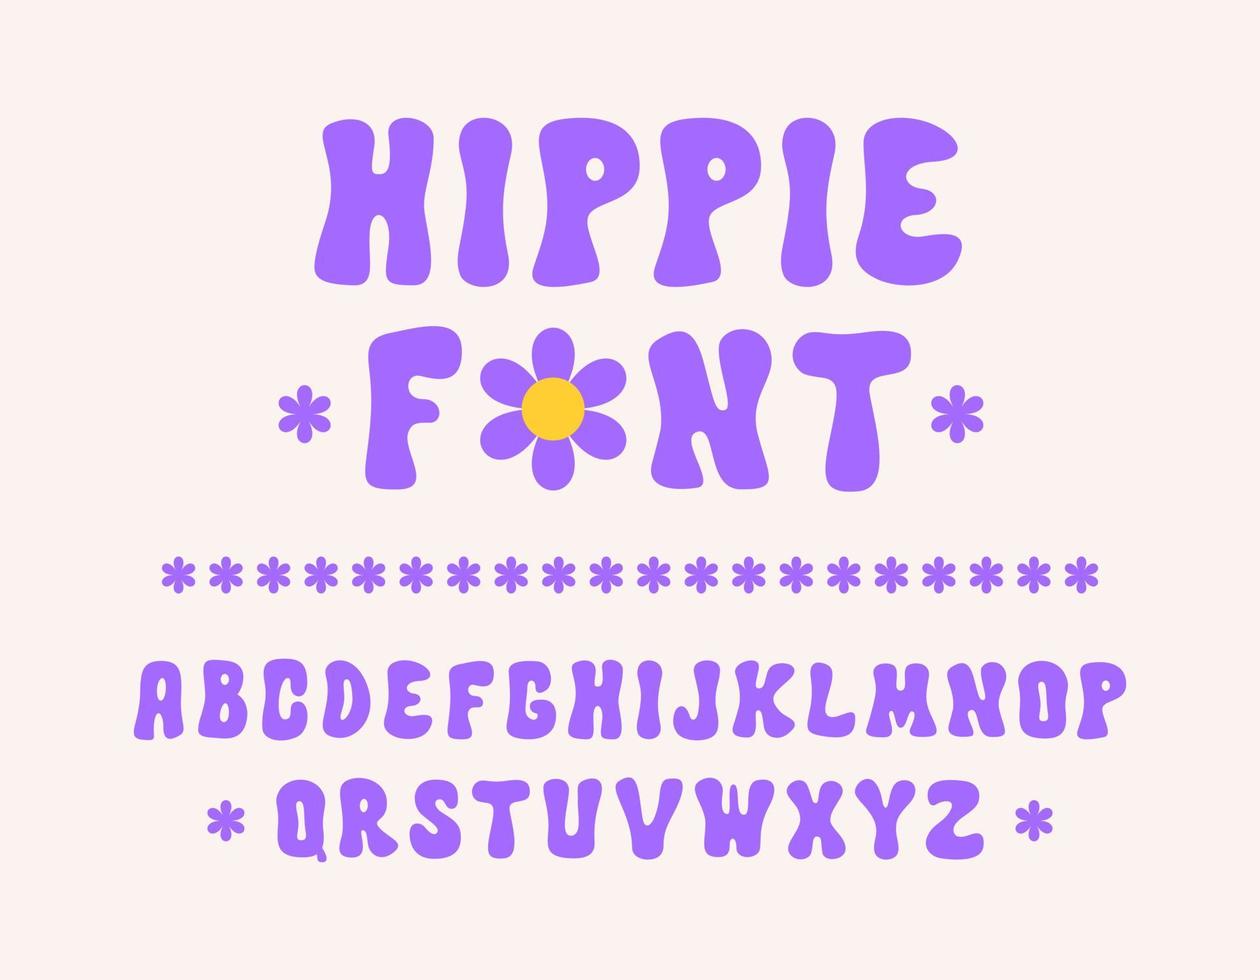 fonte desenhada à mão hippie no estilo retrô dos anos 60, 70. alfabeto psicodélico na moda. ilustração vetorial de desenho animado vetor